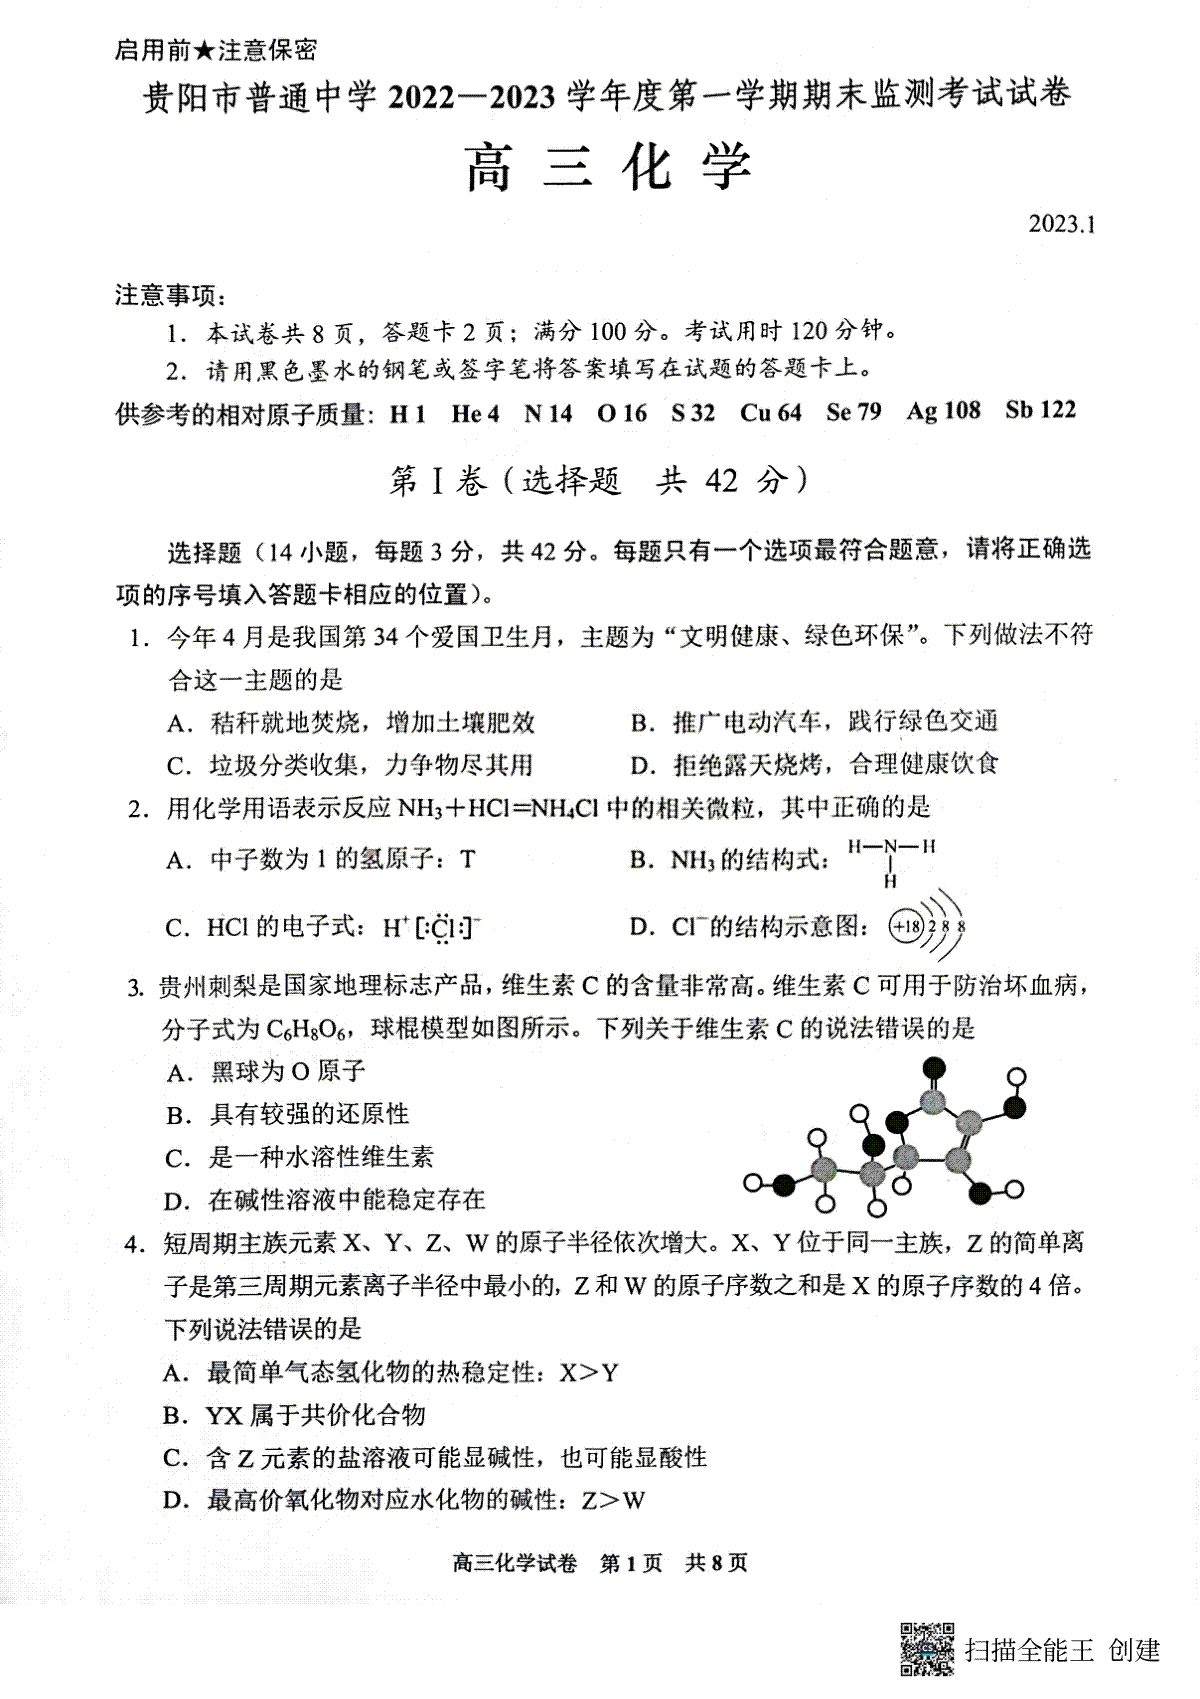 贵阳市普通中学 2022-2023 学年度第一学期期末监测考试试卷高三地化学